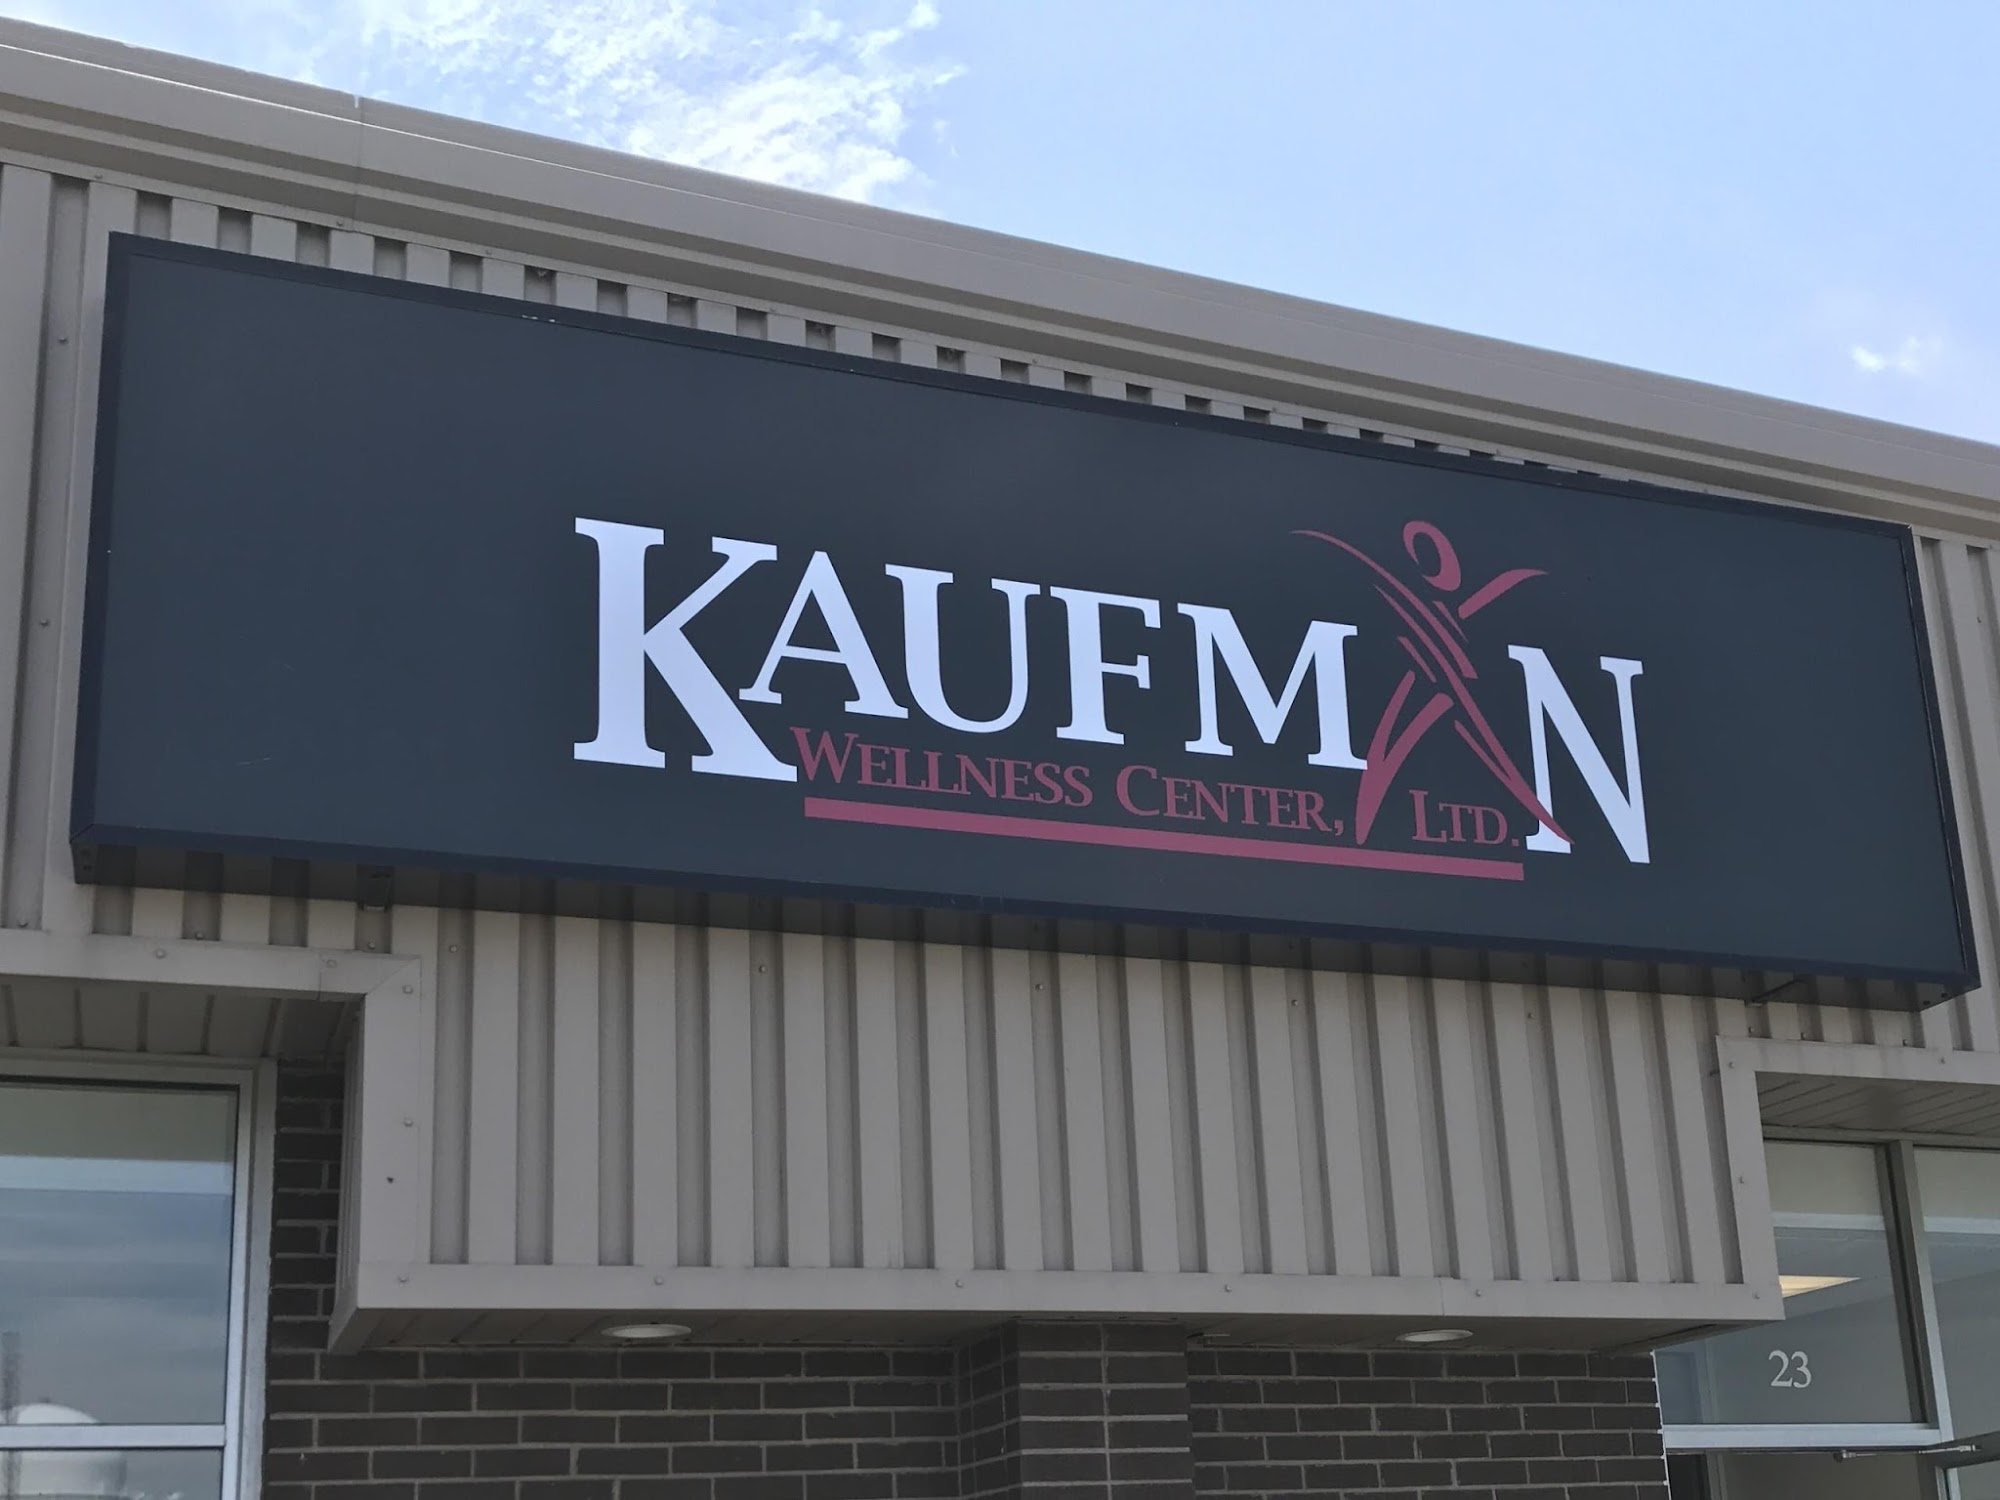 Kaufman Wellness Center, Ltd.